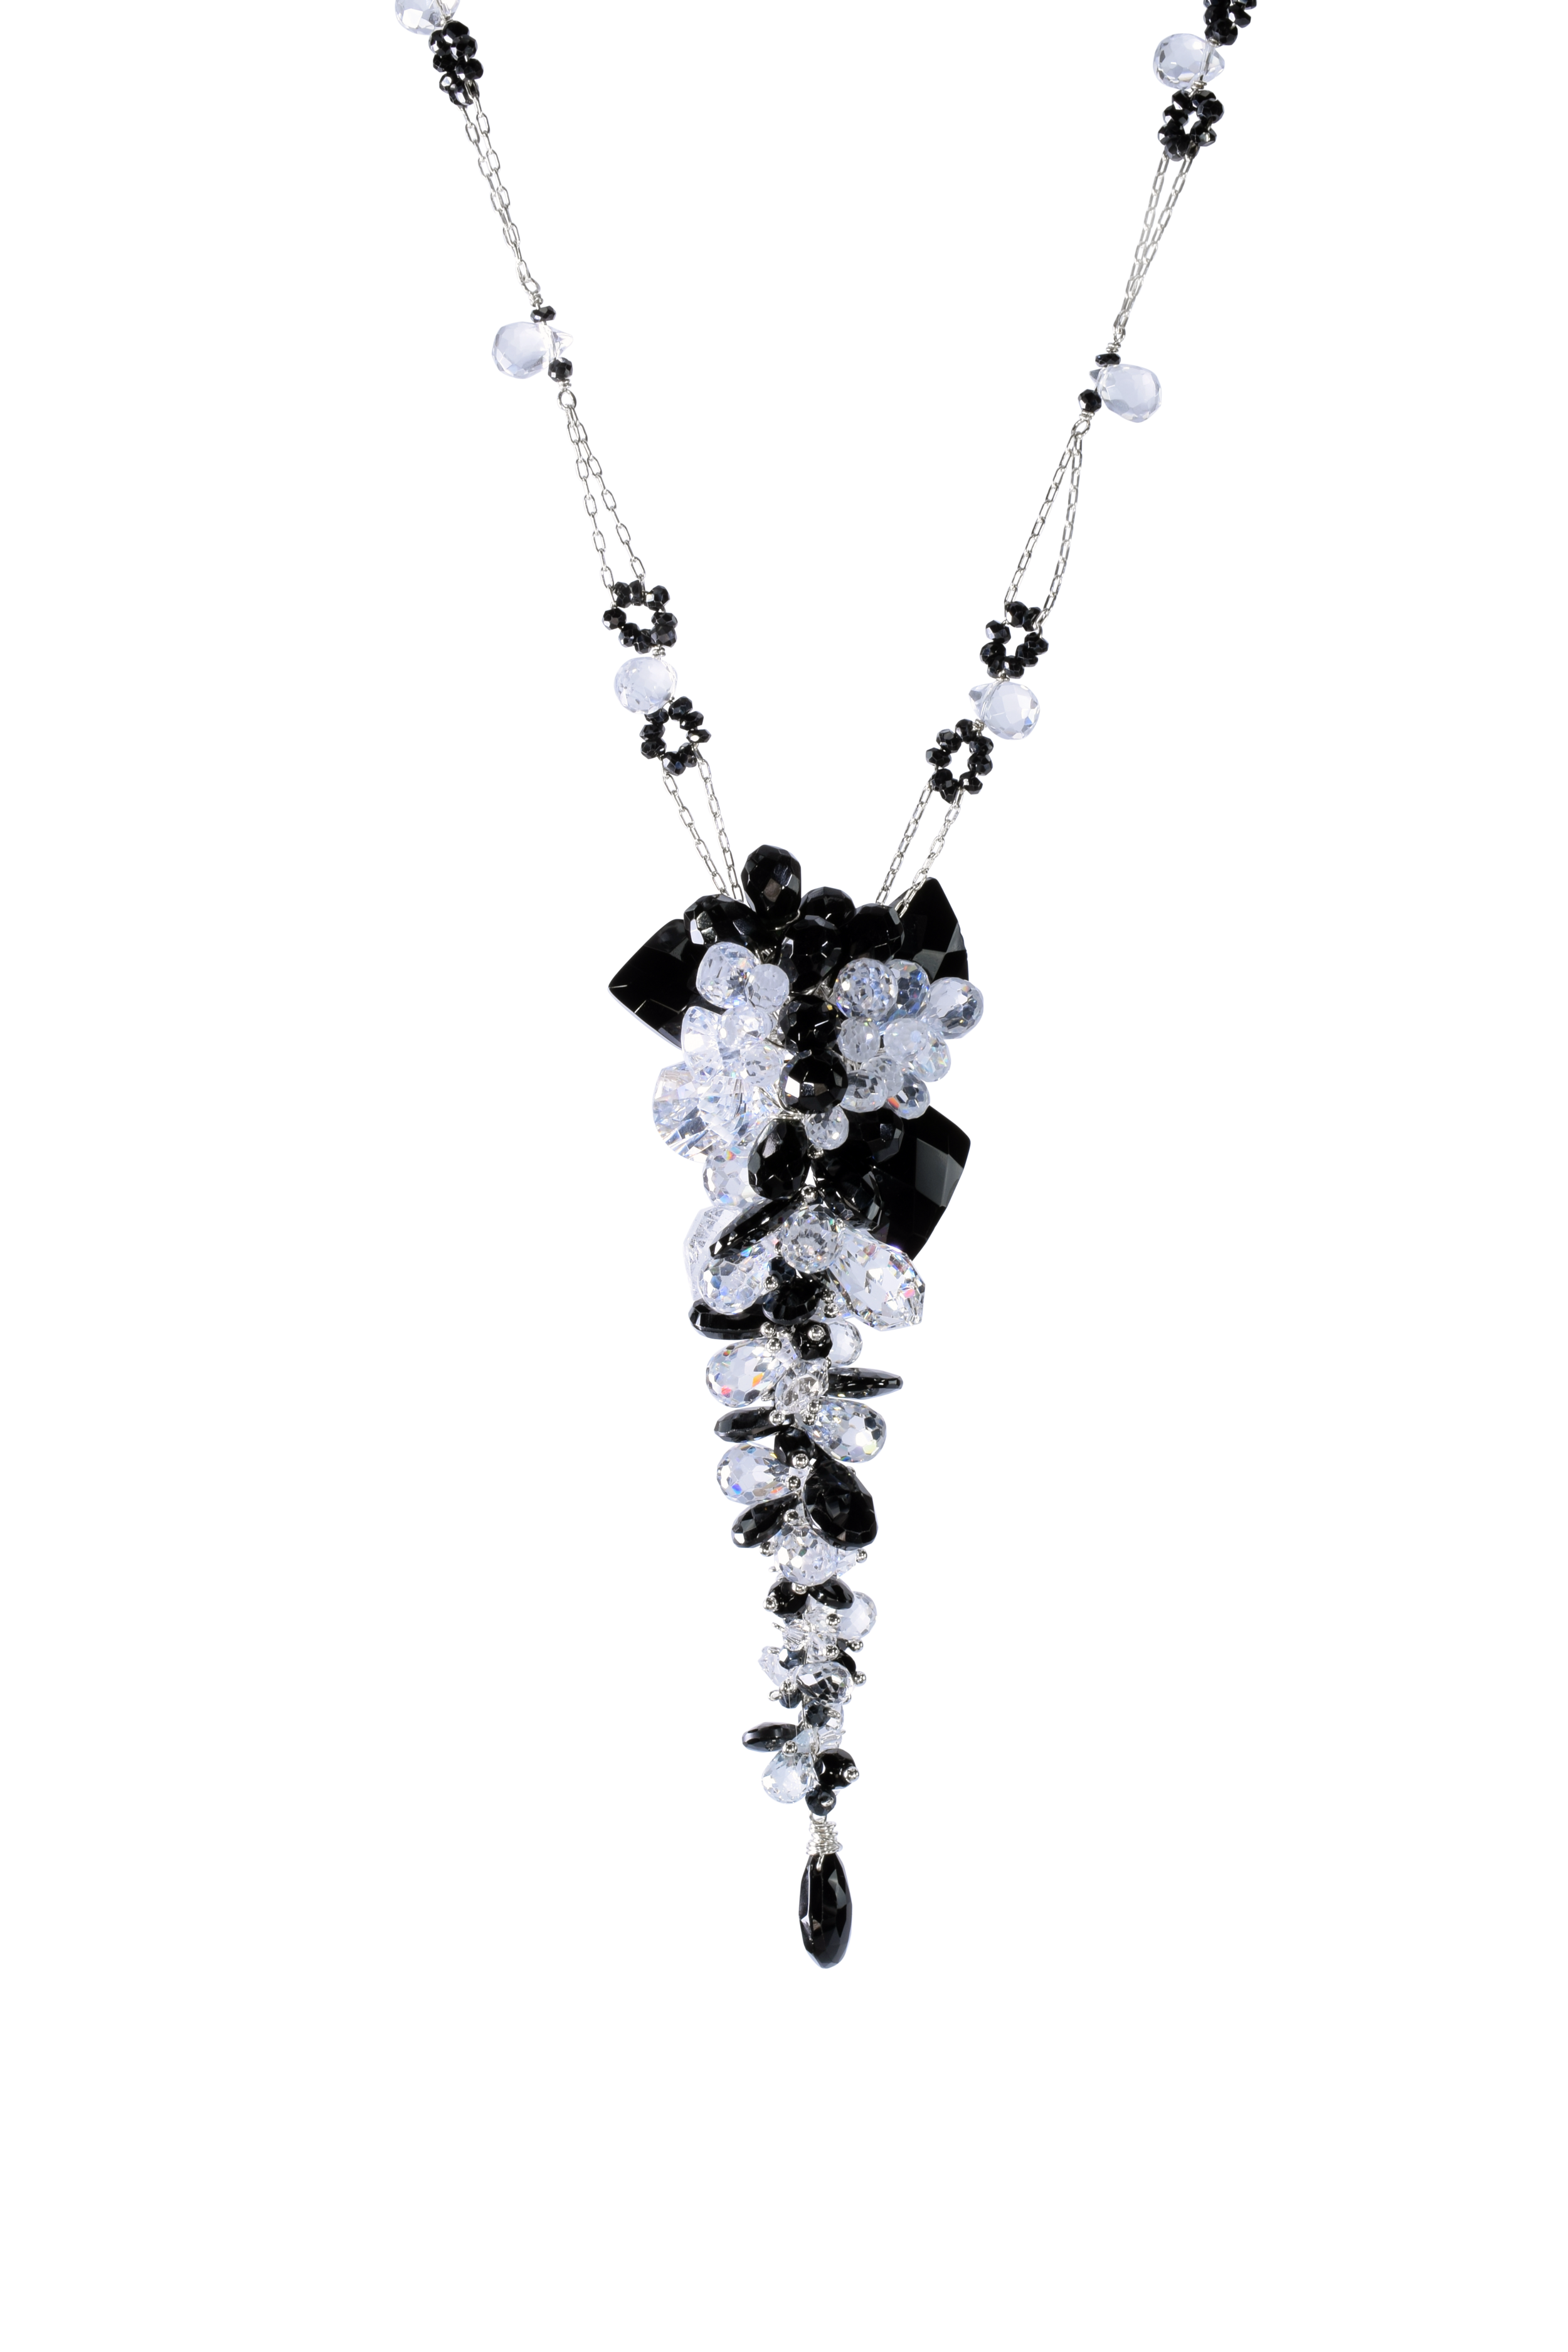 Black onyx Swarovski crystals, zirconia black spinel cluster drop necklace